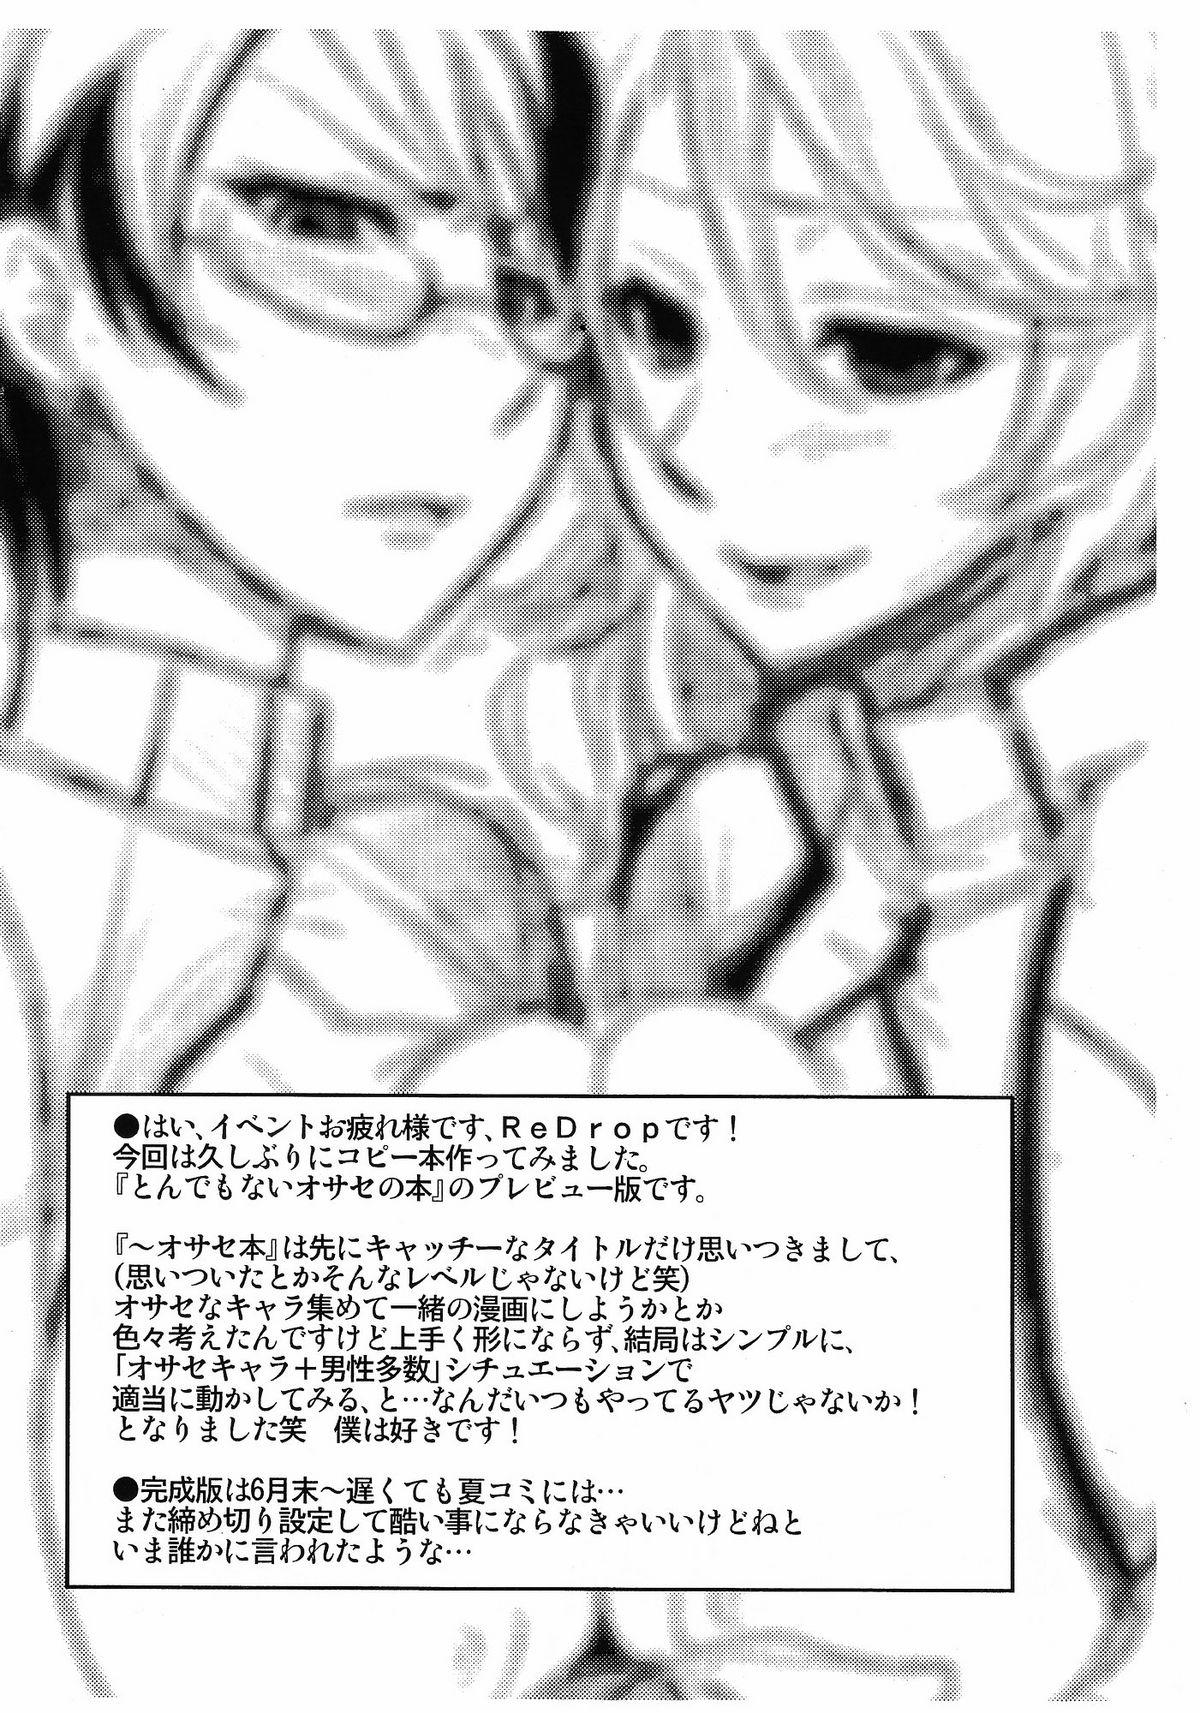 Jacking Off Tondemonai Osase no Hon PREVIEW Ban - Gundam 00 Lima - Page 2